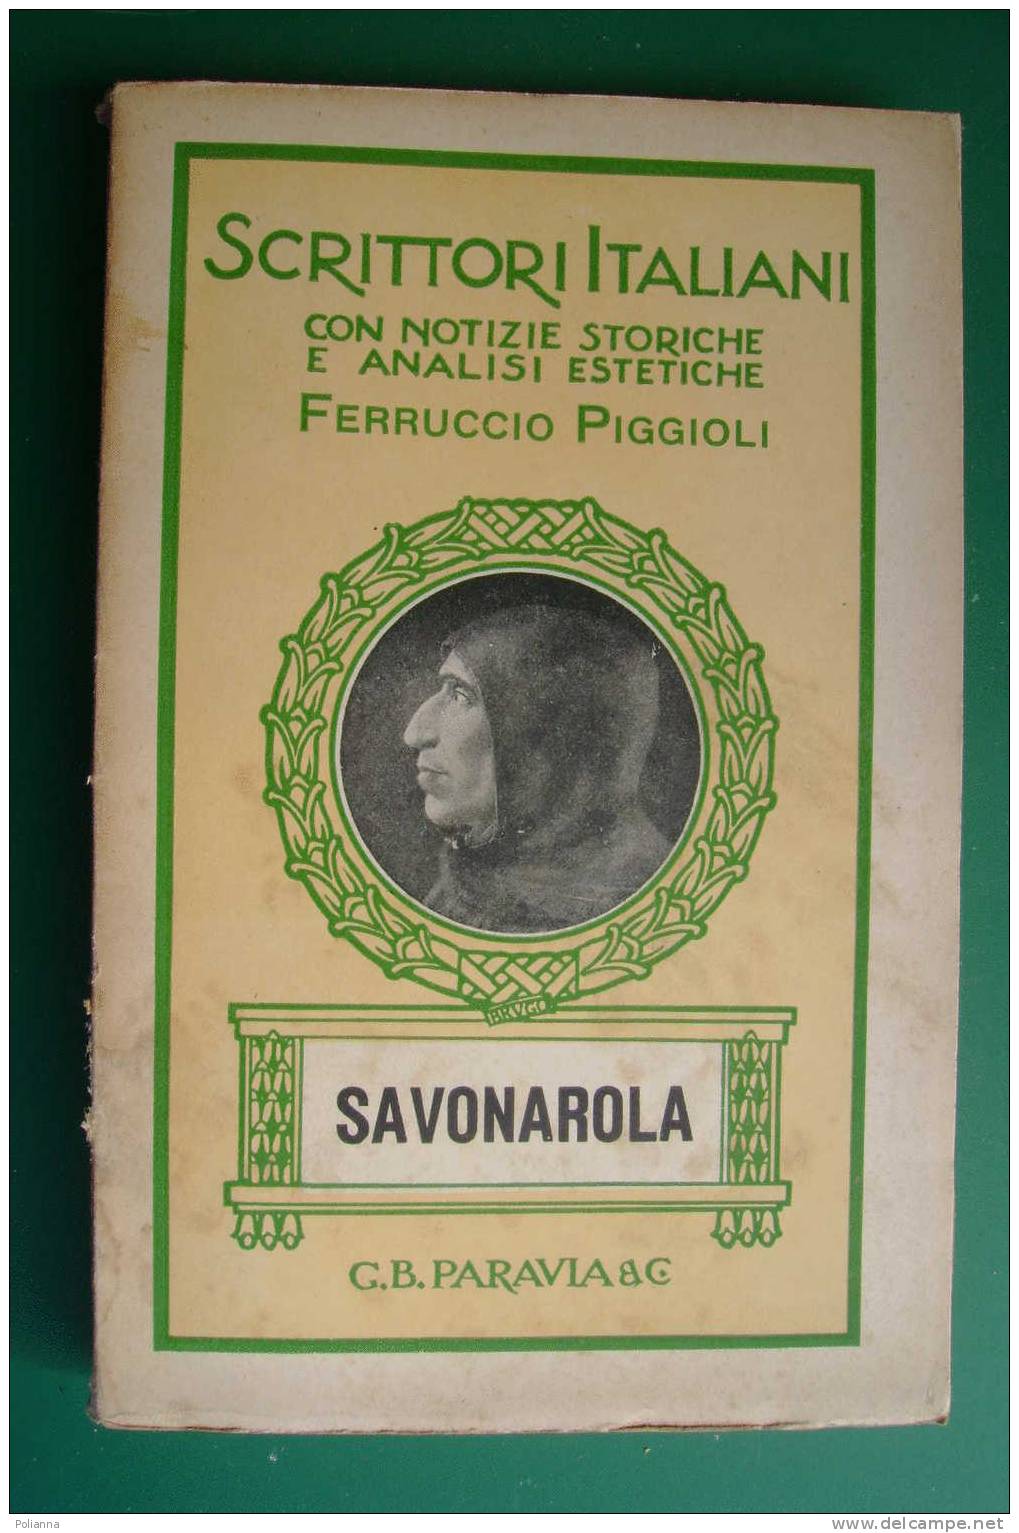 PDD/41 Scrittori Italiani - Ferruccio Piggioli - SAVONAROLA  Paravia 1934 - History, Biography, Philosophy